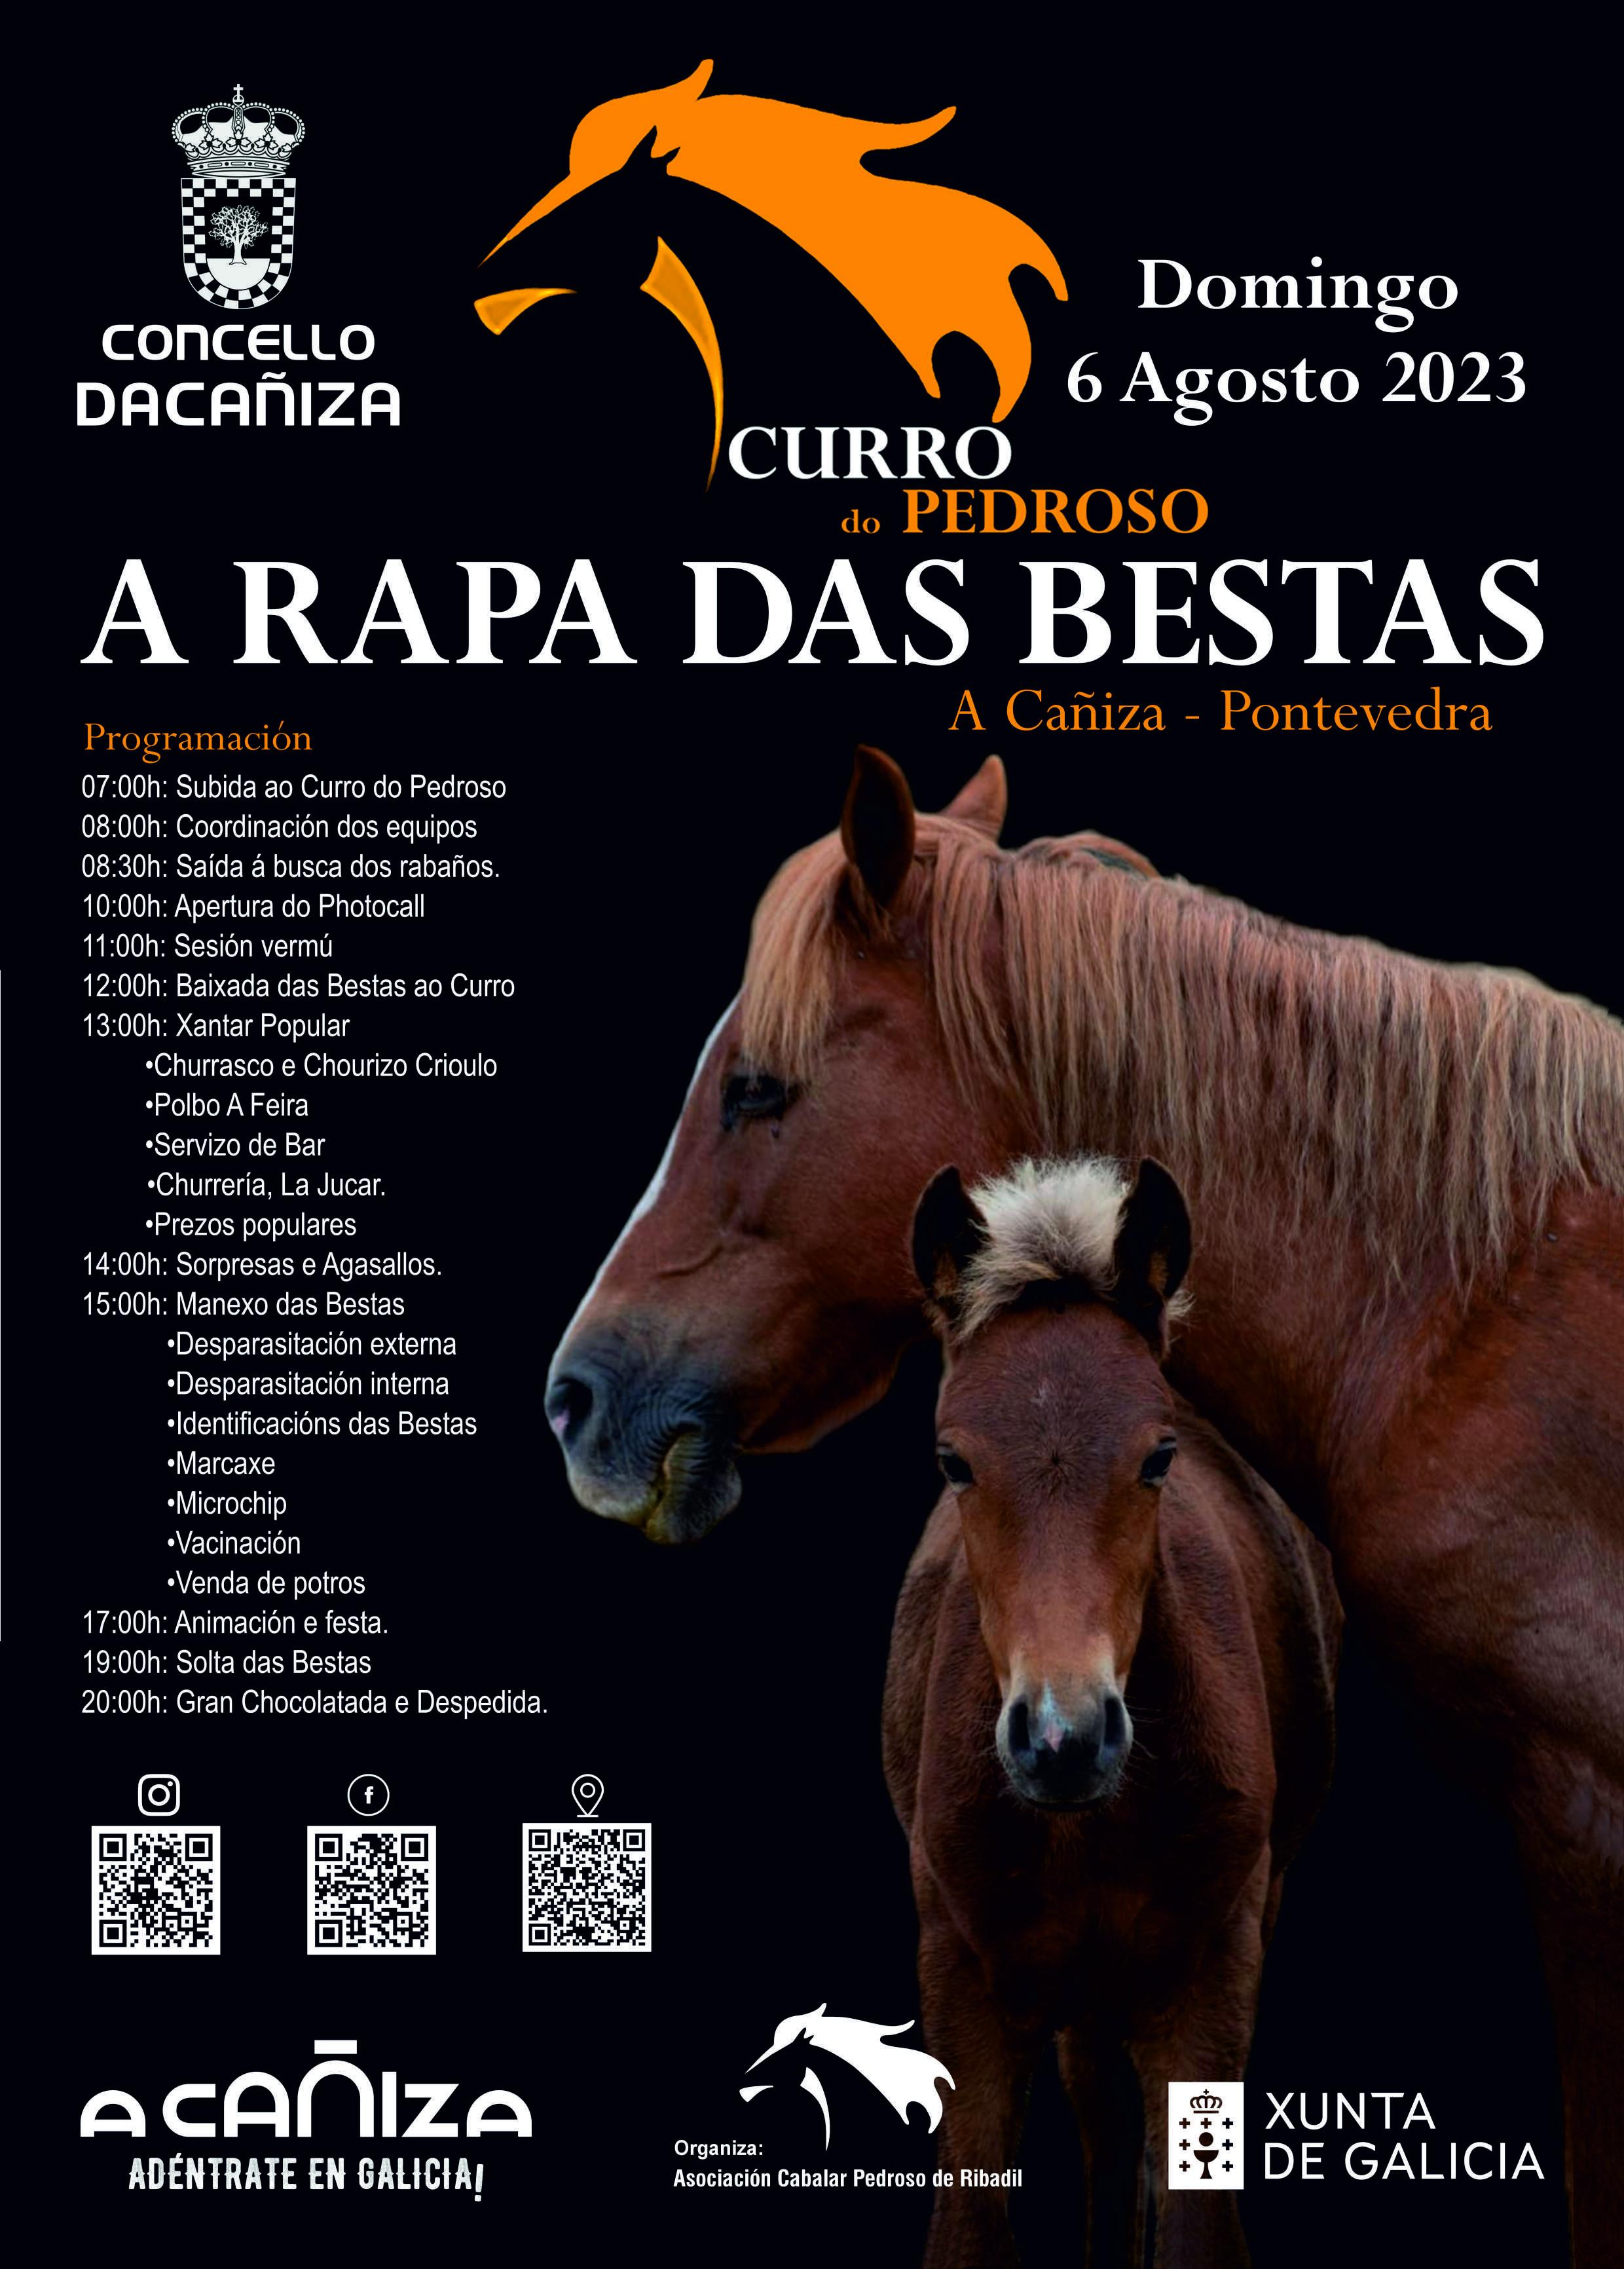 Curro do Pedroso - Rapa das Bestas 2023. A Cañiza 6 de agosto de 2023